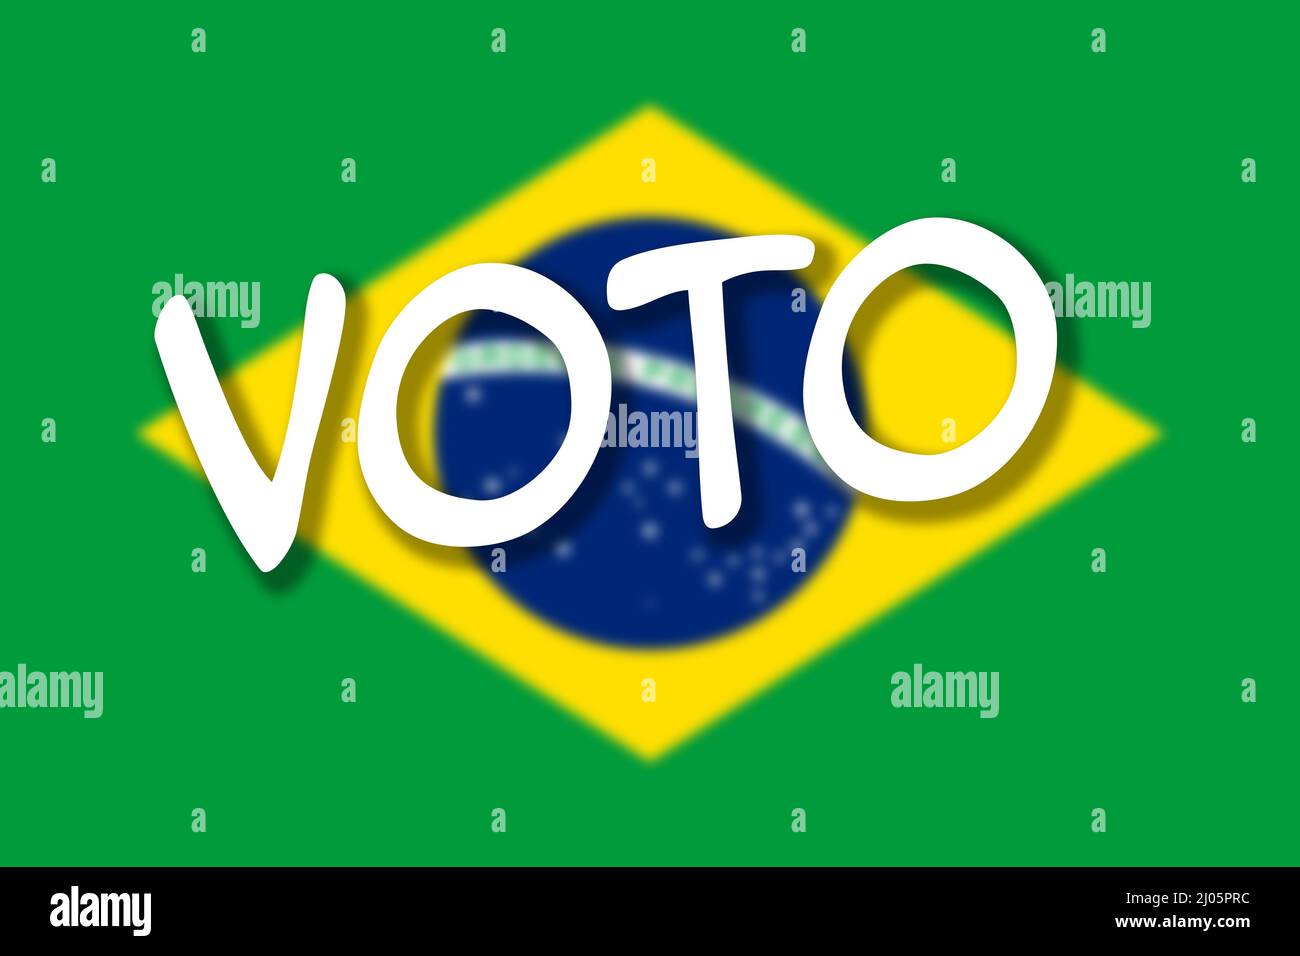 Drapeau du Brésil avec texte - VOTO - signifiant VOTE en portugais. Banque D'Images